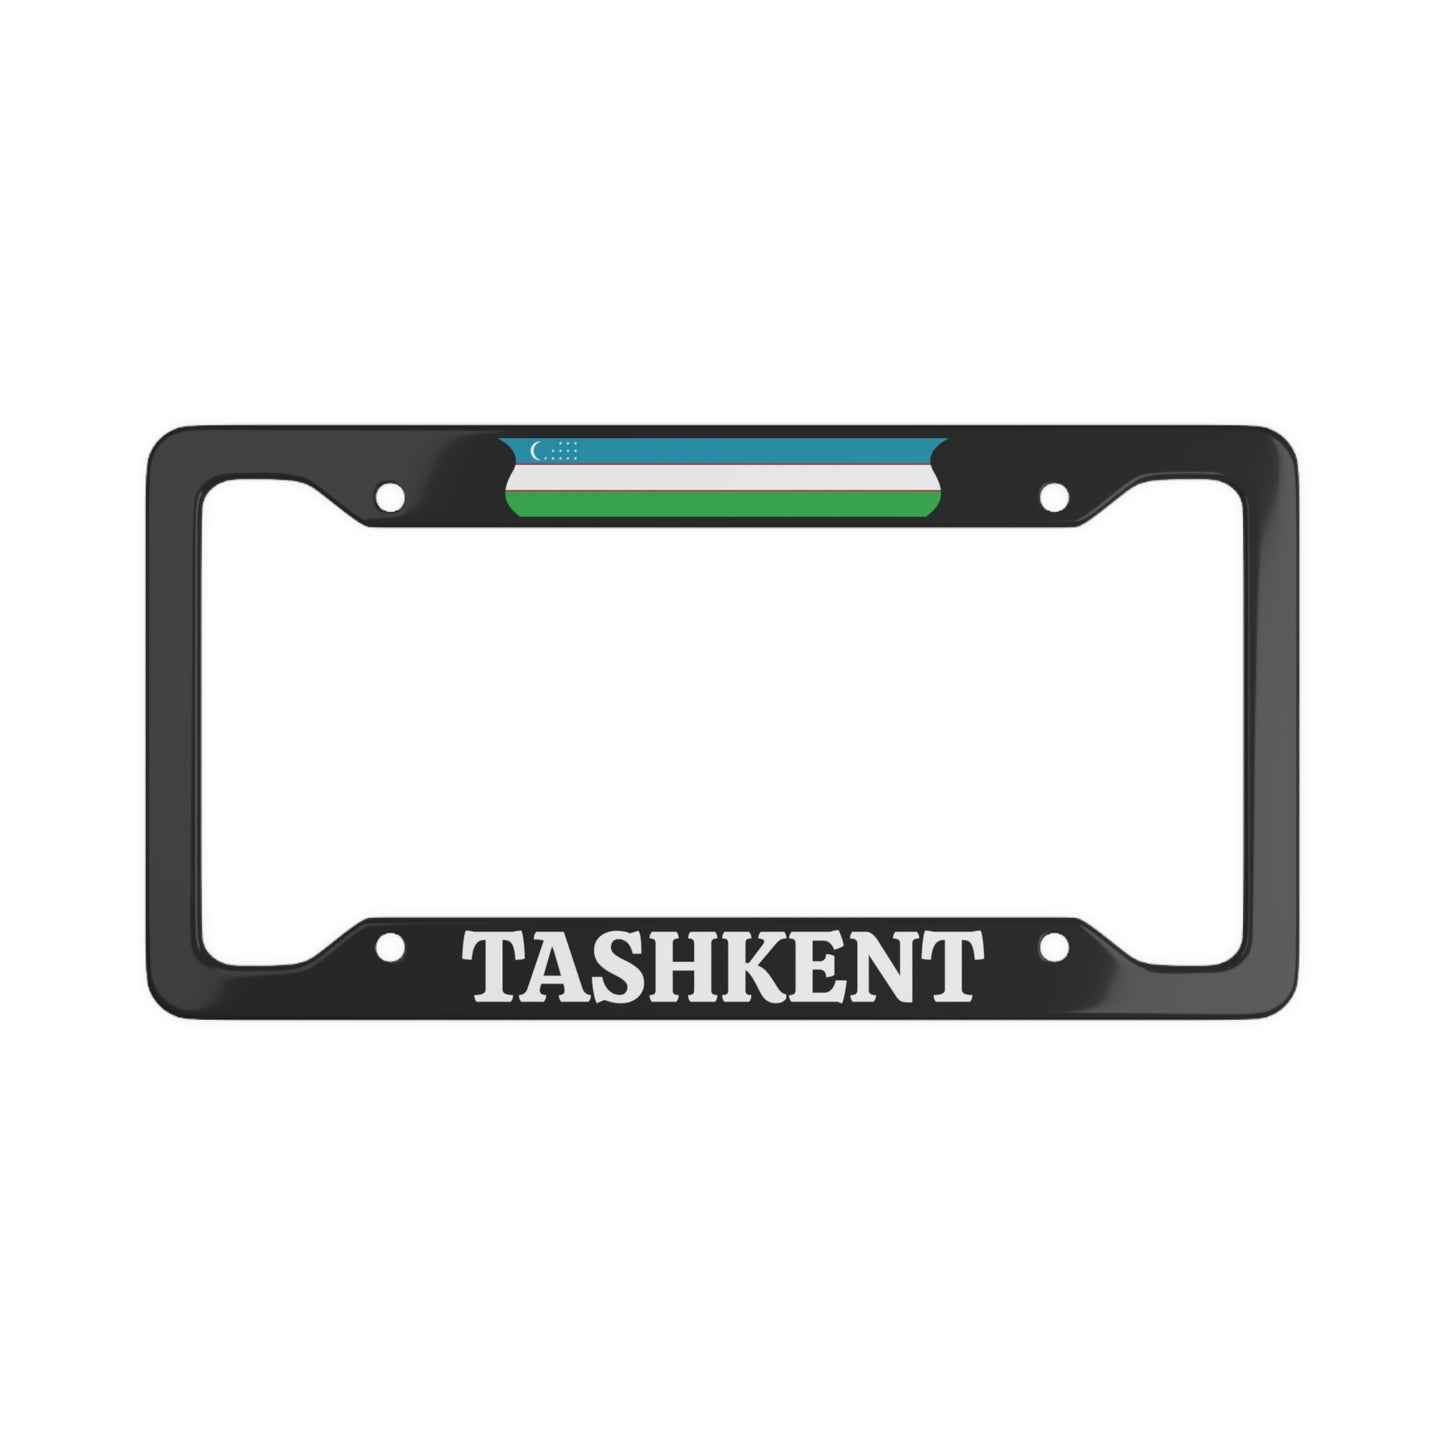 TASHKENT Uzbekistan with flag License Plate Frame